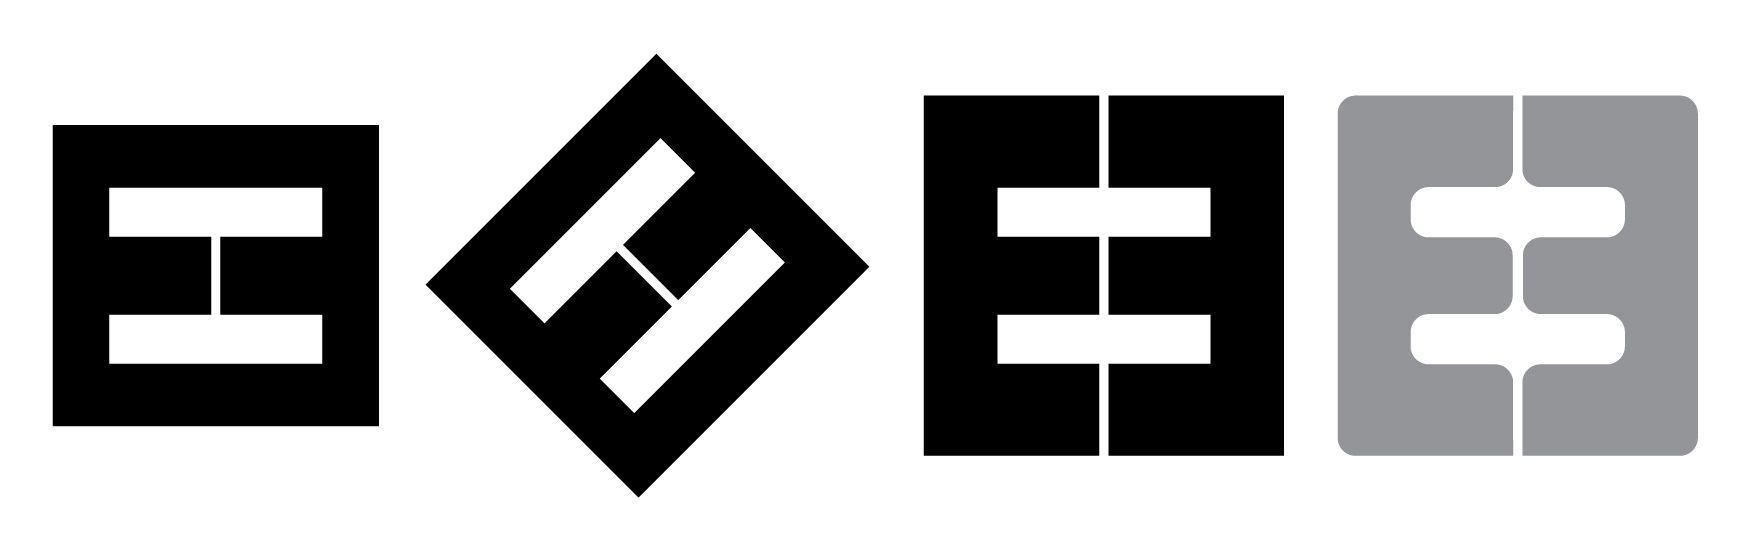 Double E Logo - logo | Marvelous Things